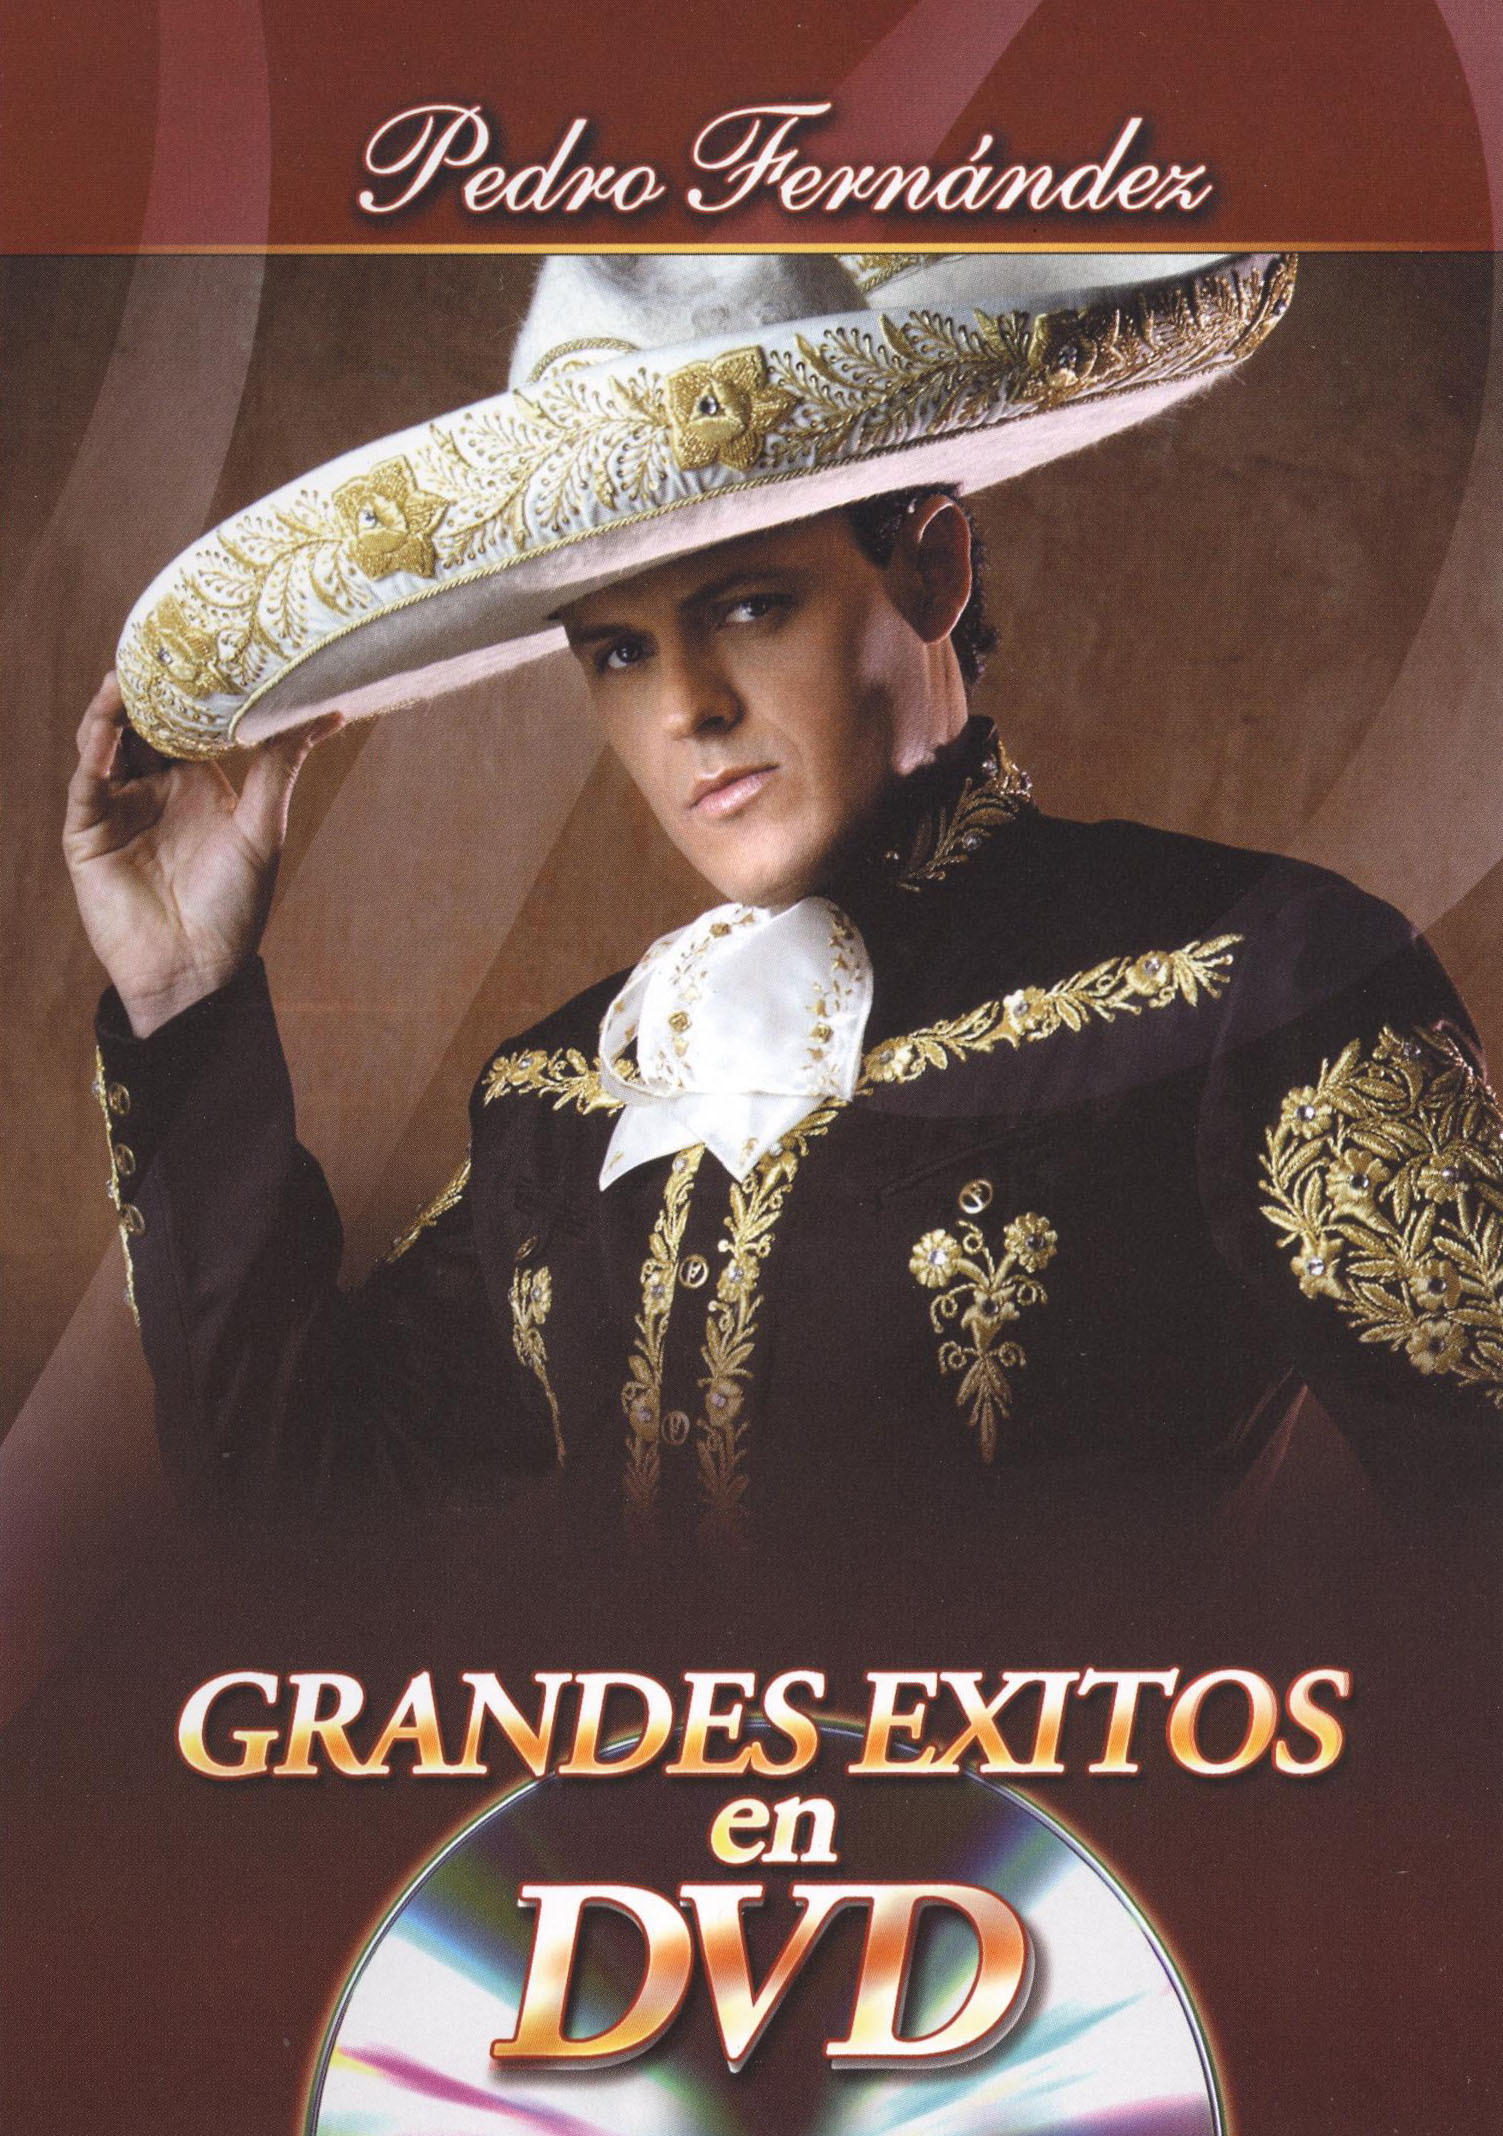 Pedro Fernandez Grandes Exitos en DVD (2009) Cast and Crew AllMovie